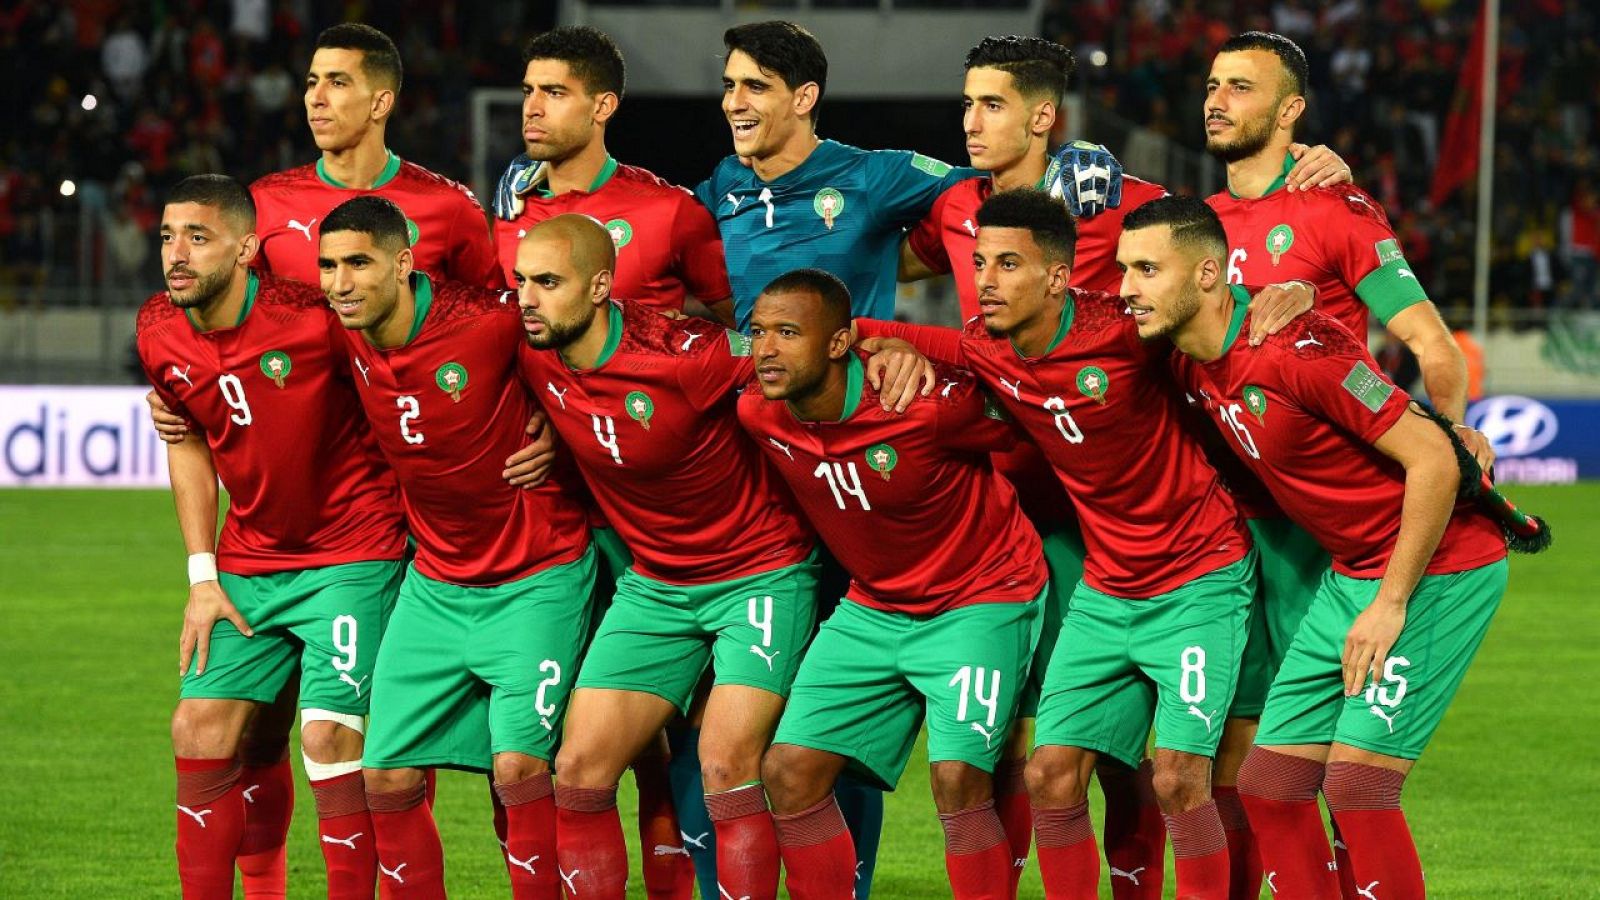 ¿Cuántos mundos de fútbol ya juegan en Marruecos?